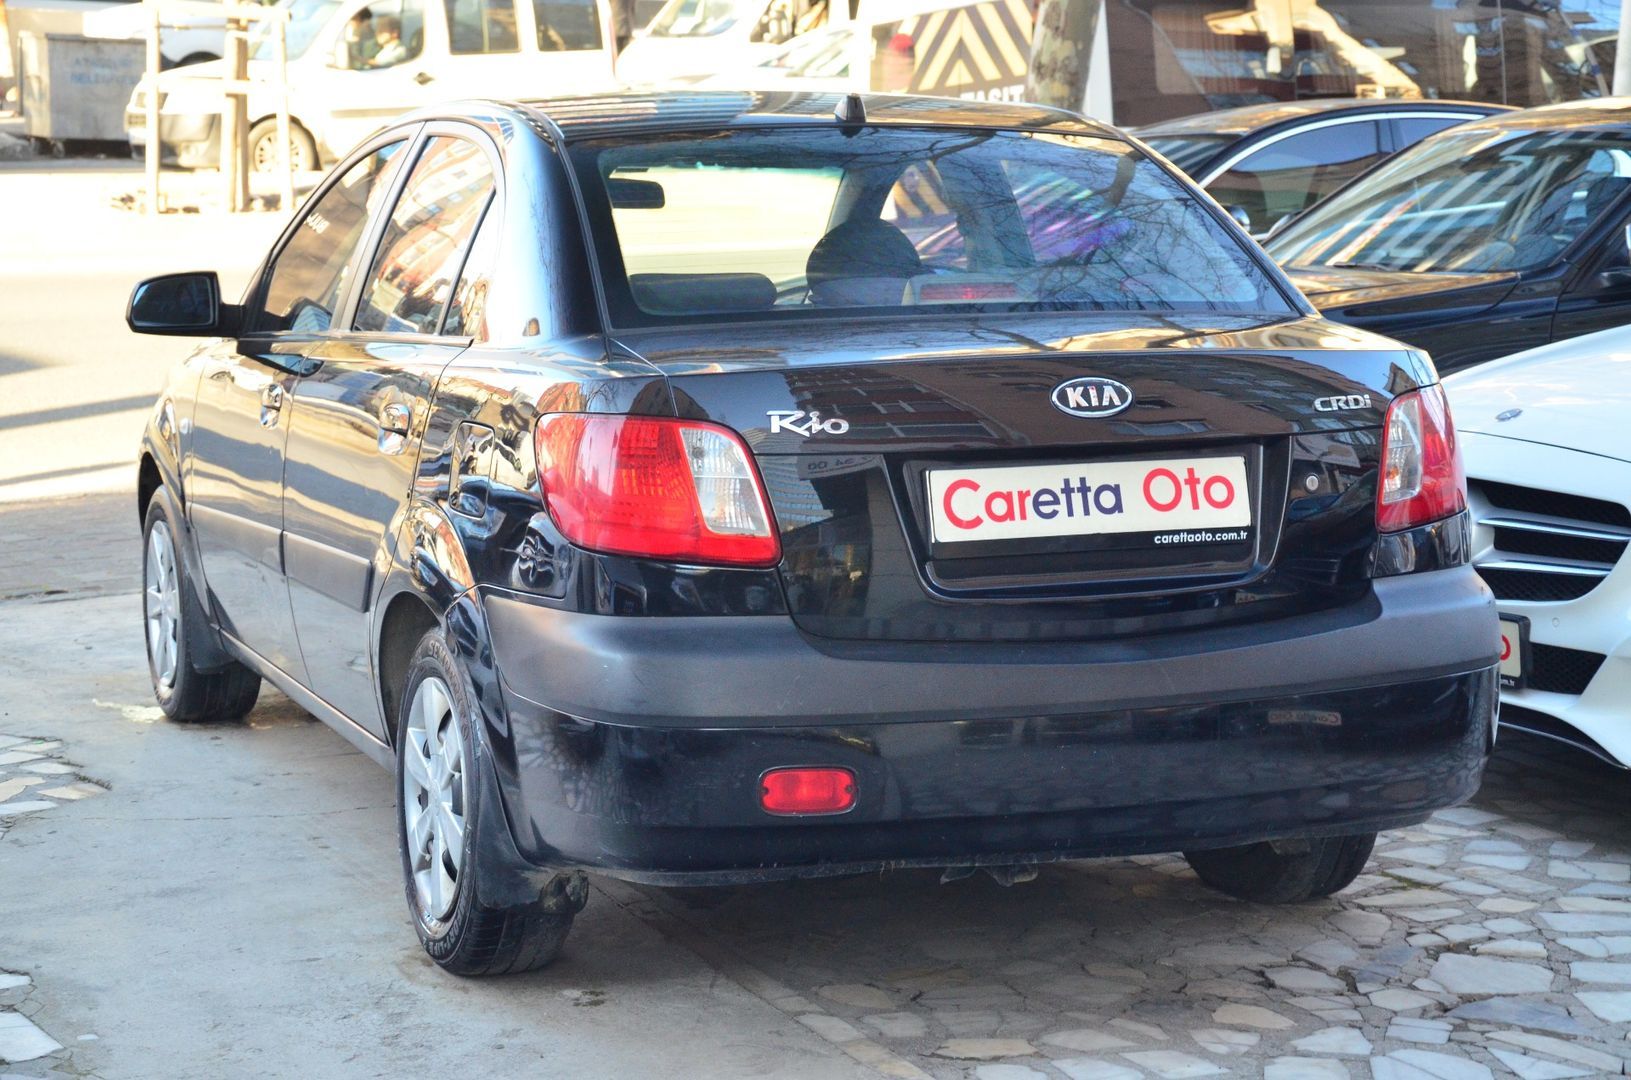  Bakımlı, Kia Rio 1.5 CRDi Comfort Sedan-4